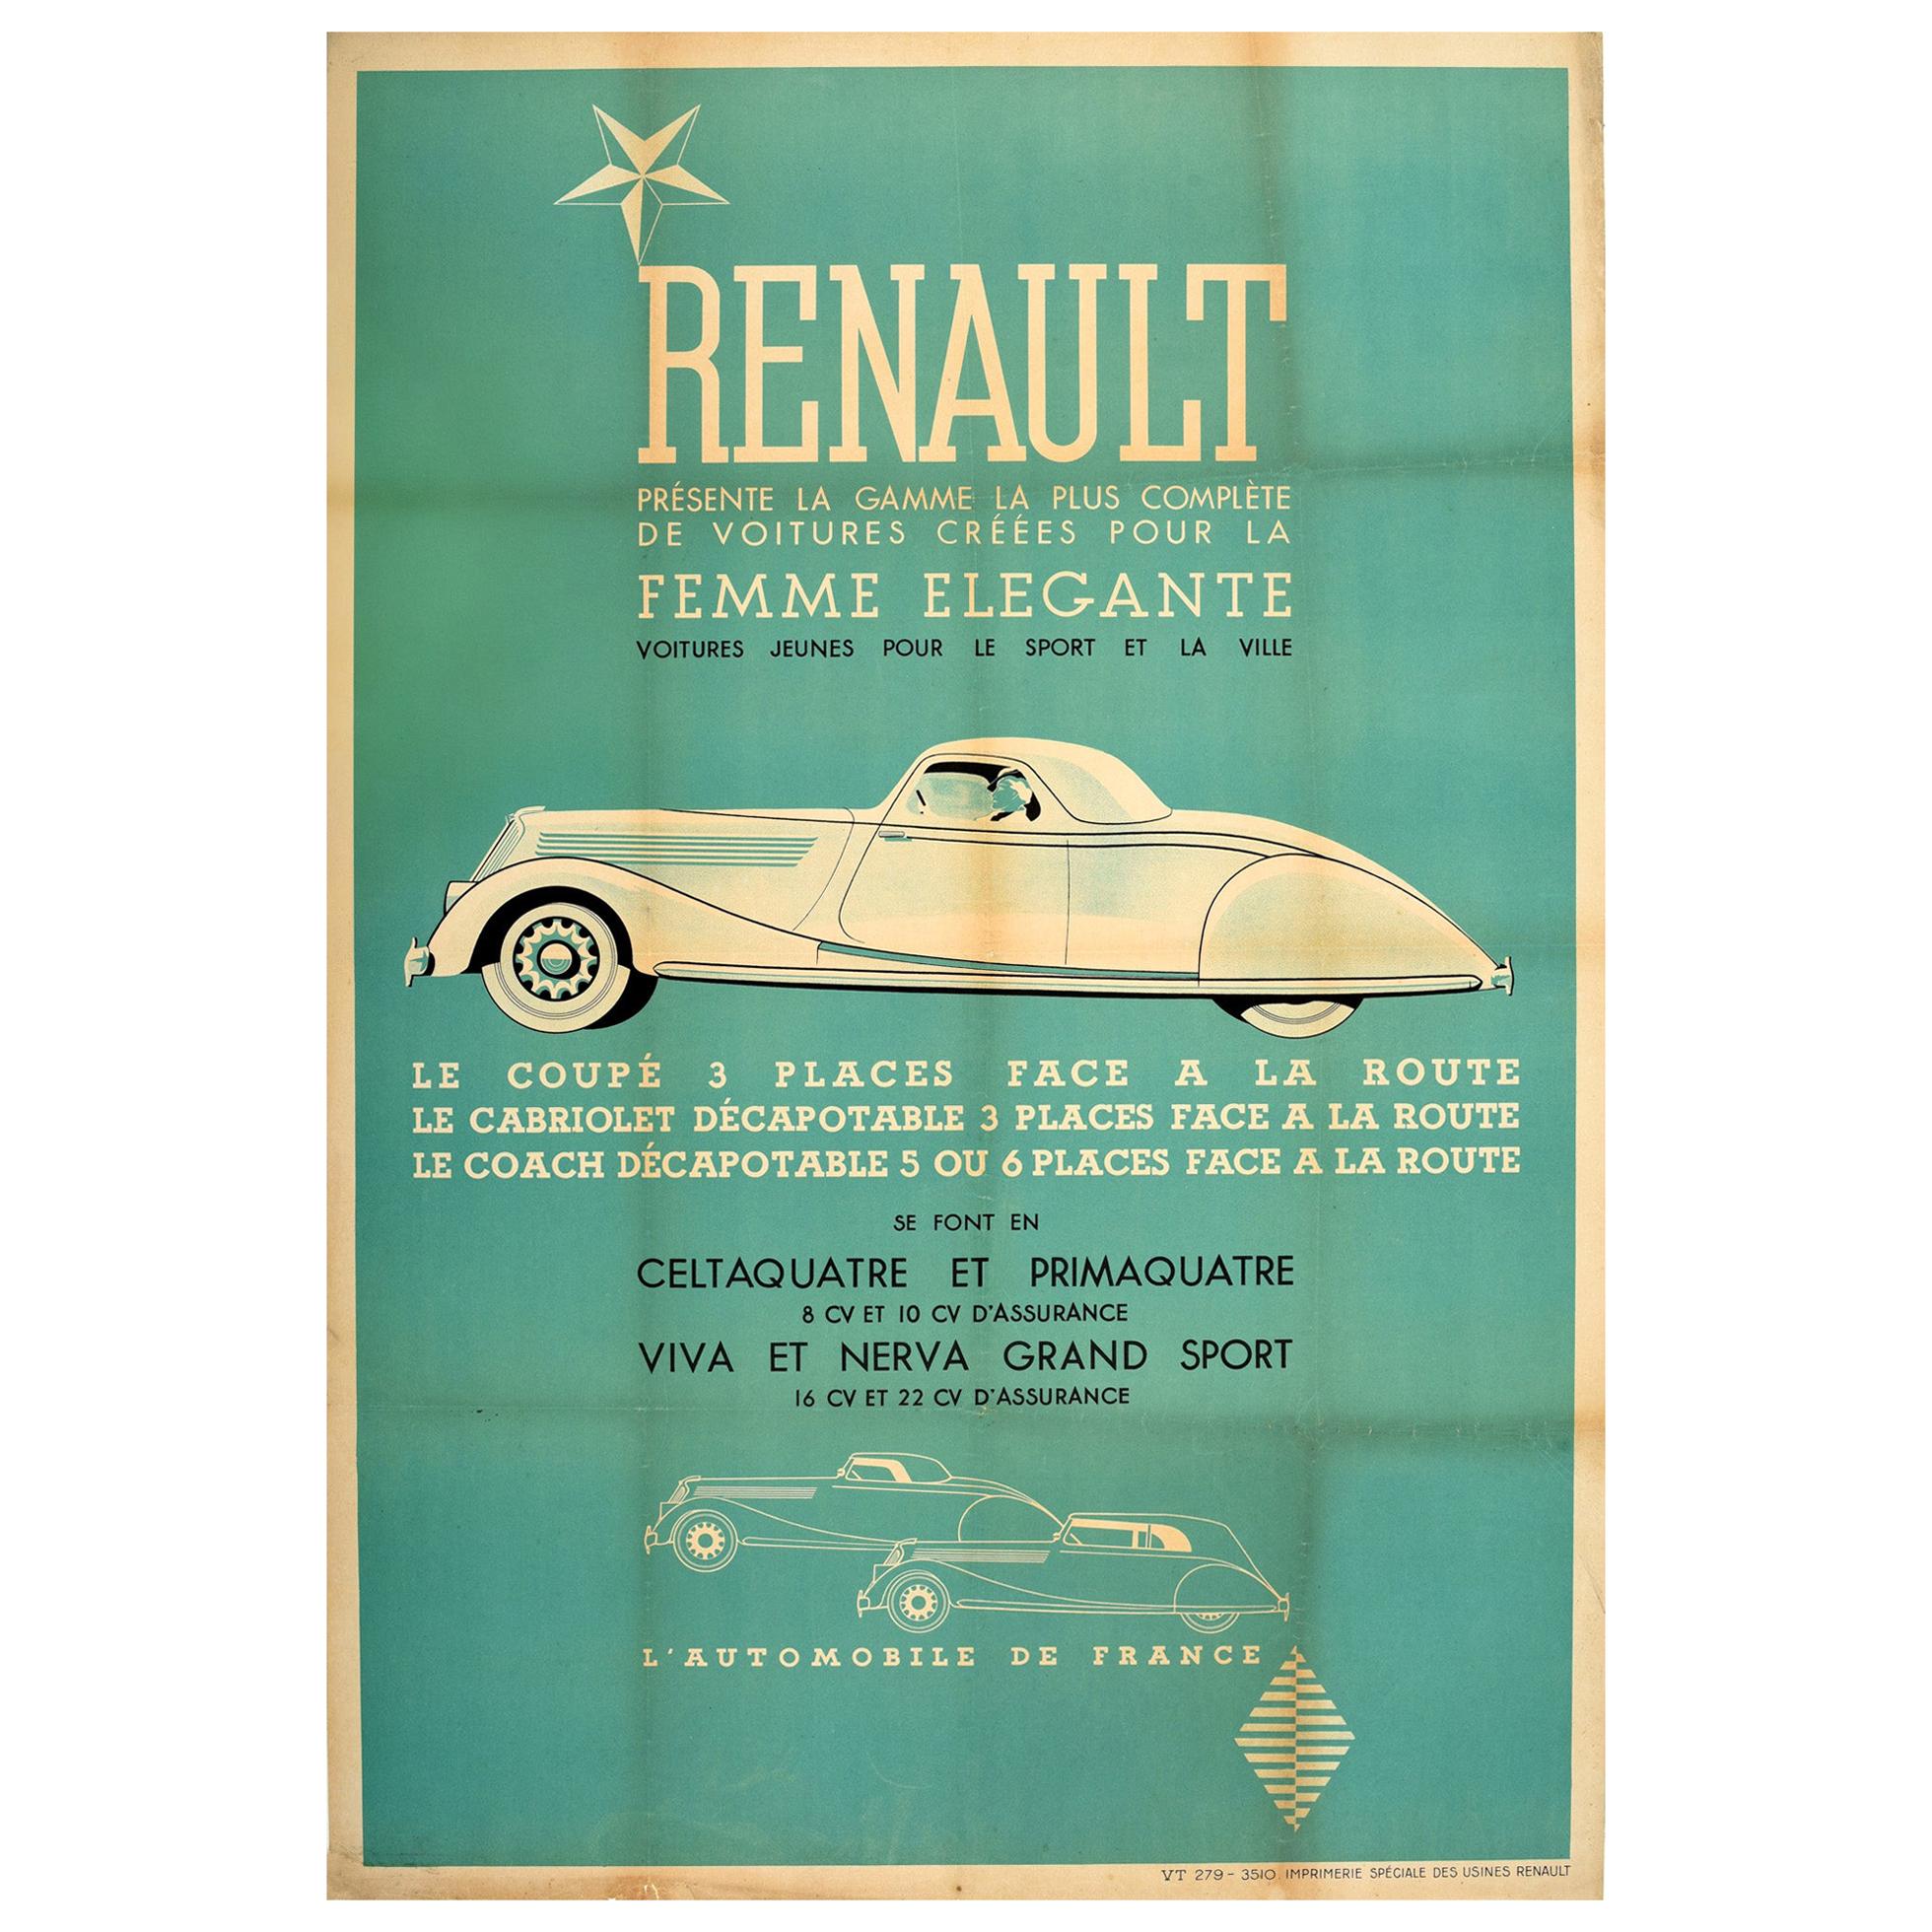 Affiche originale et ancienne de voiture Renault Coupé-Cabriolet "Femme élégante" en vente